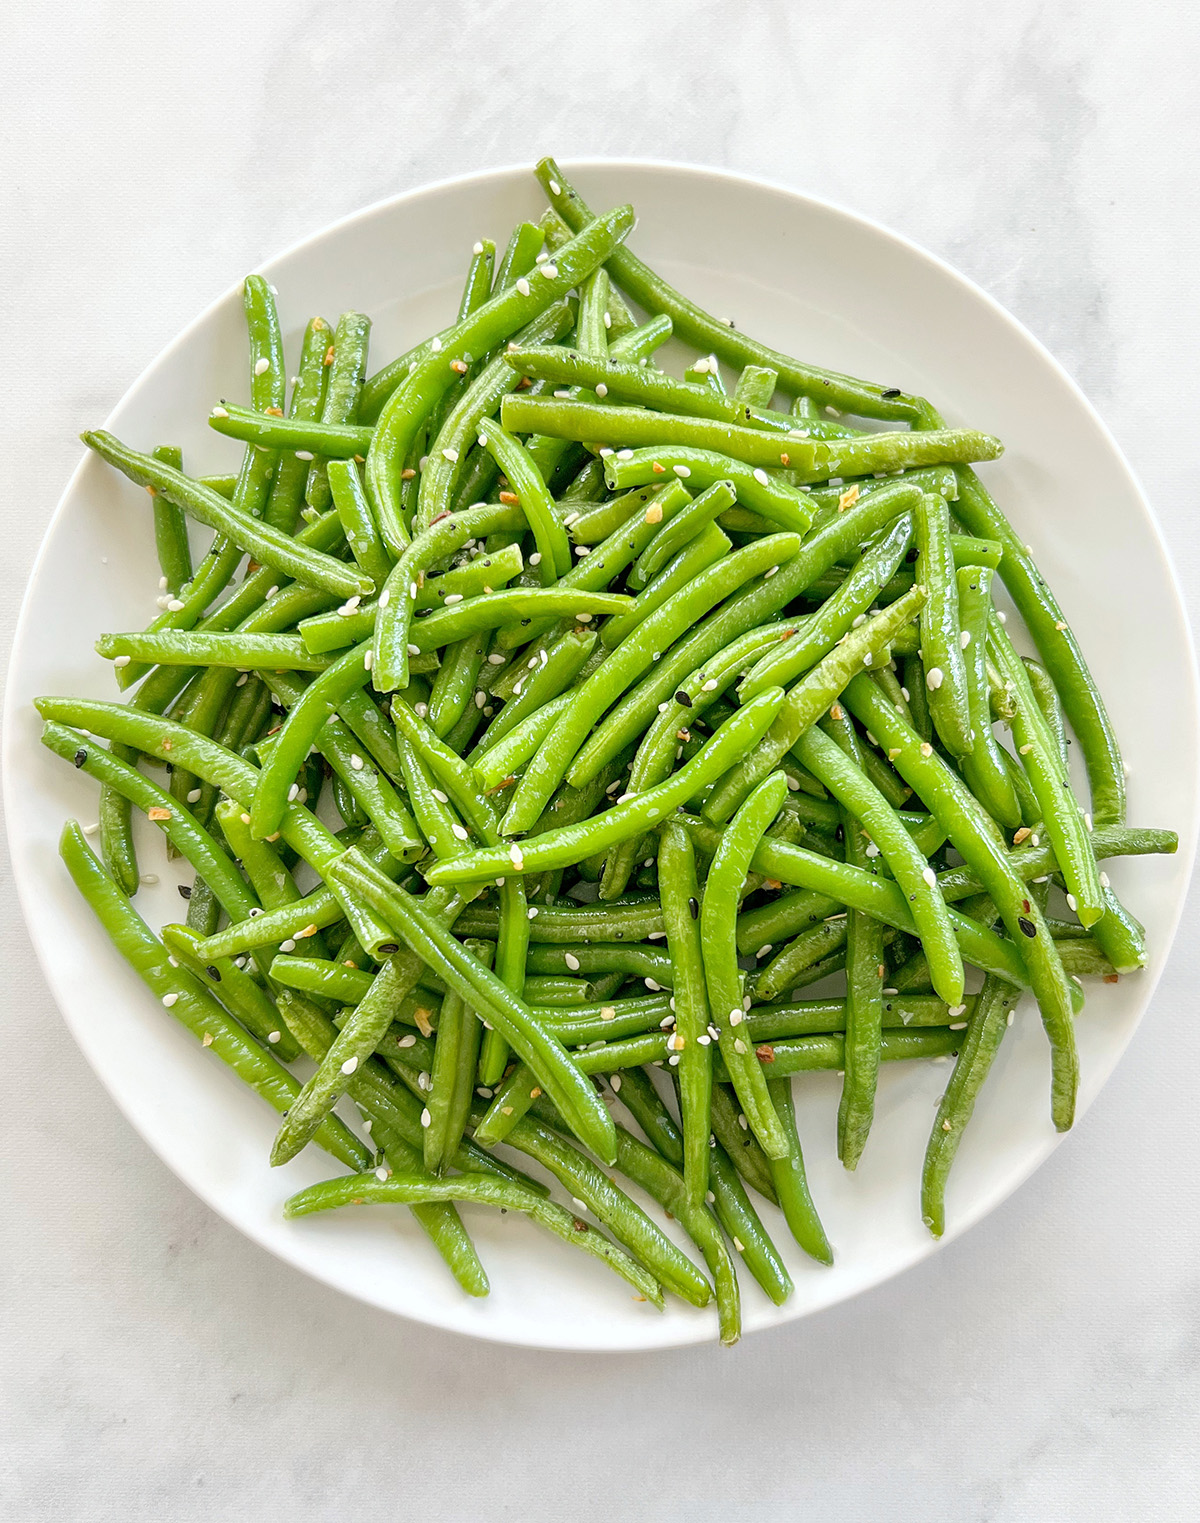 https://theurbenlife.com/wp-content/uploads/2023/02/air-fryer-green-beans.jpg